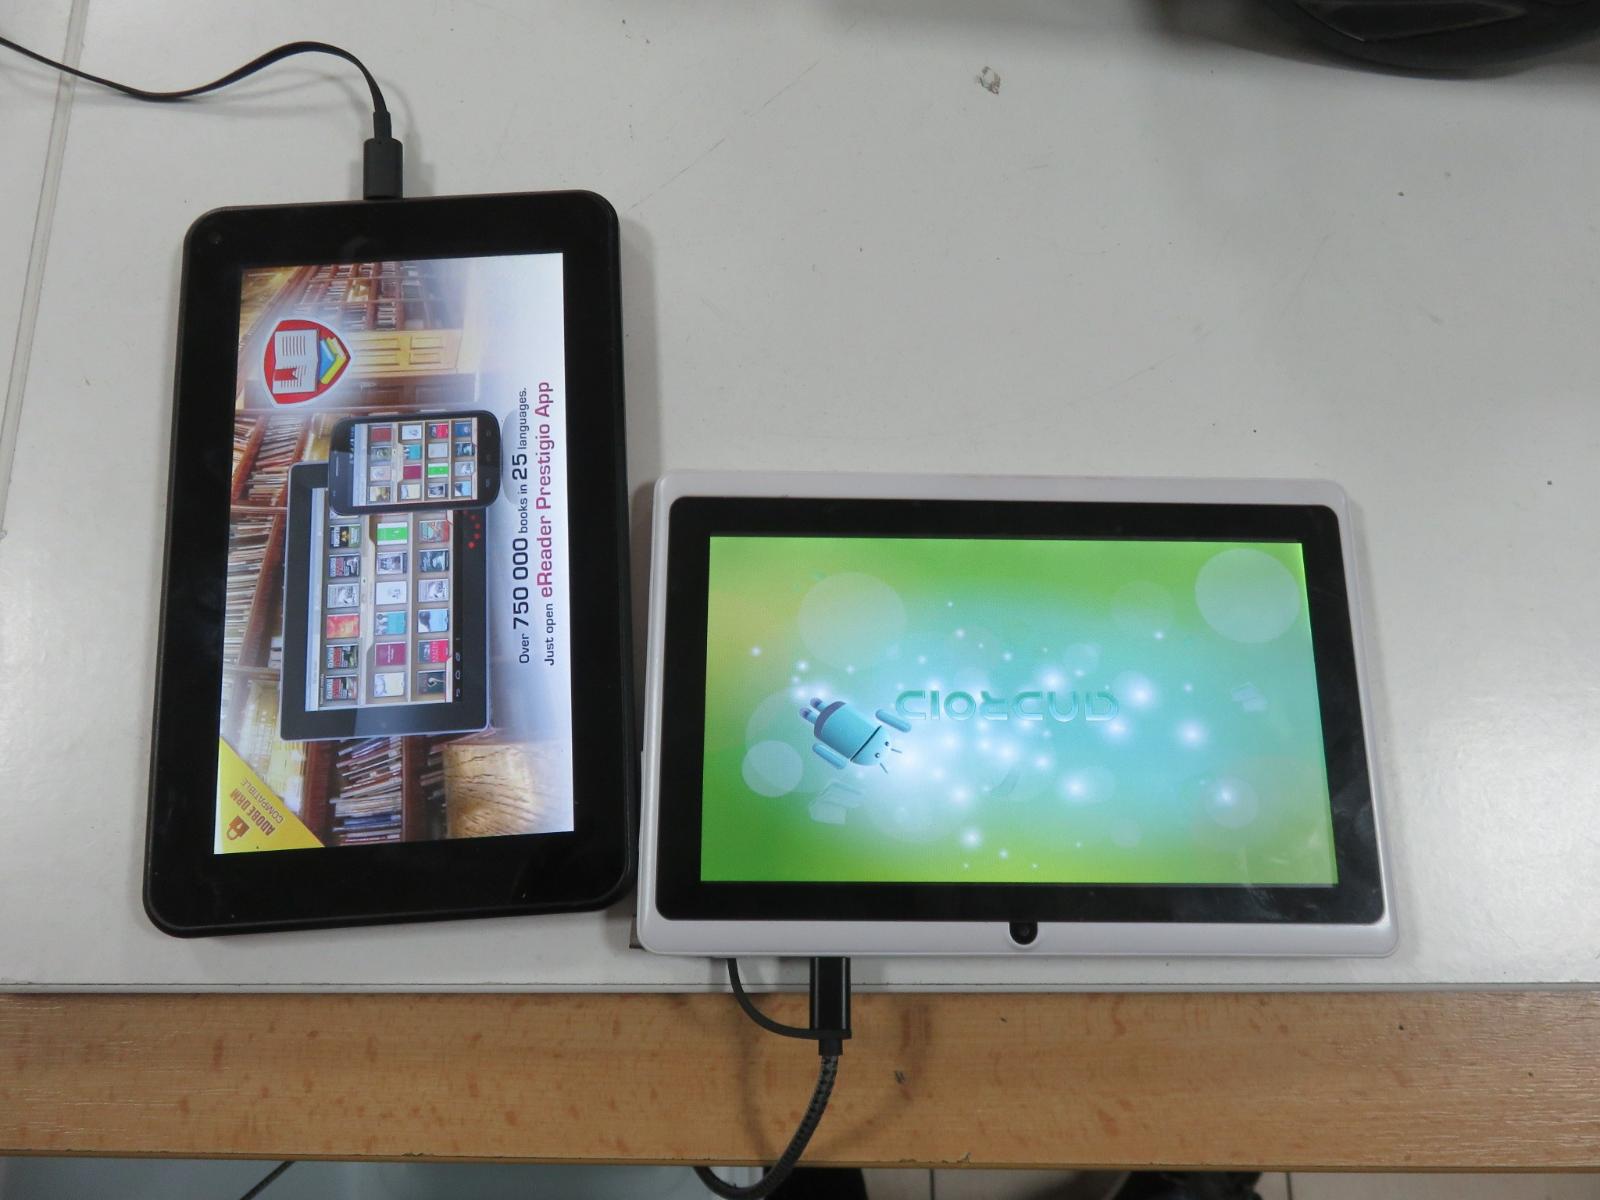 2 x tablet - Prestigio - druhý bez názvu - špatná baterie - funkční    - Počítače a hry